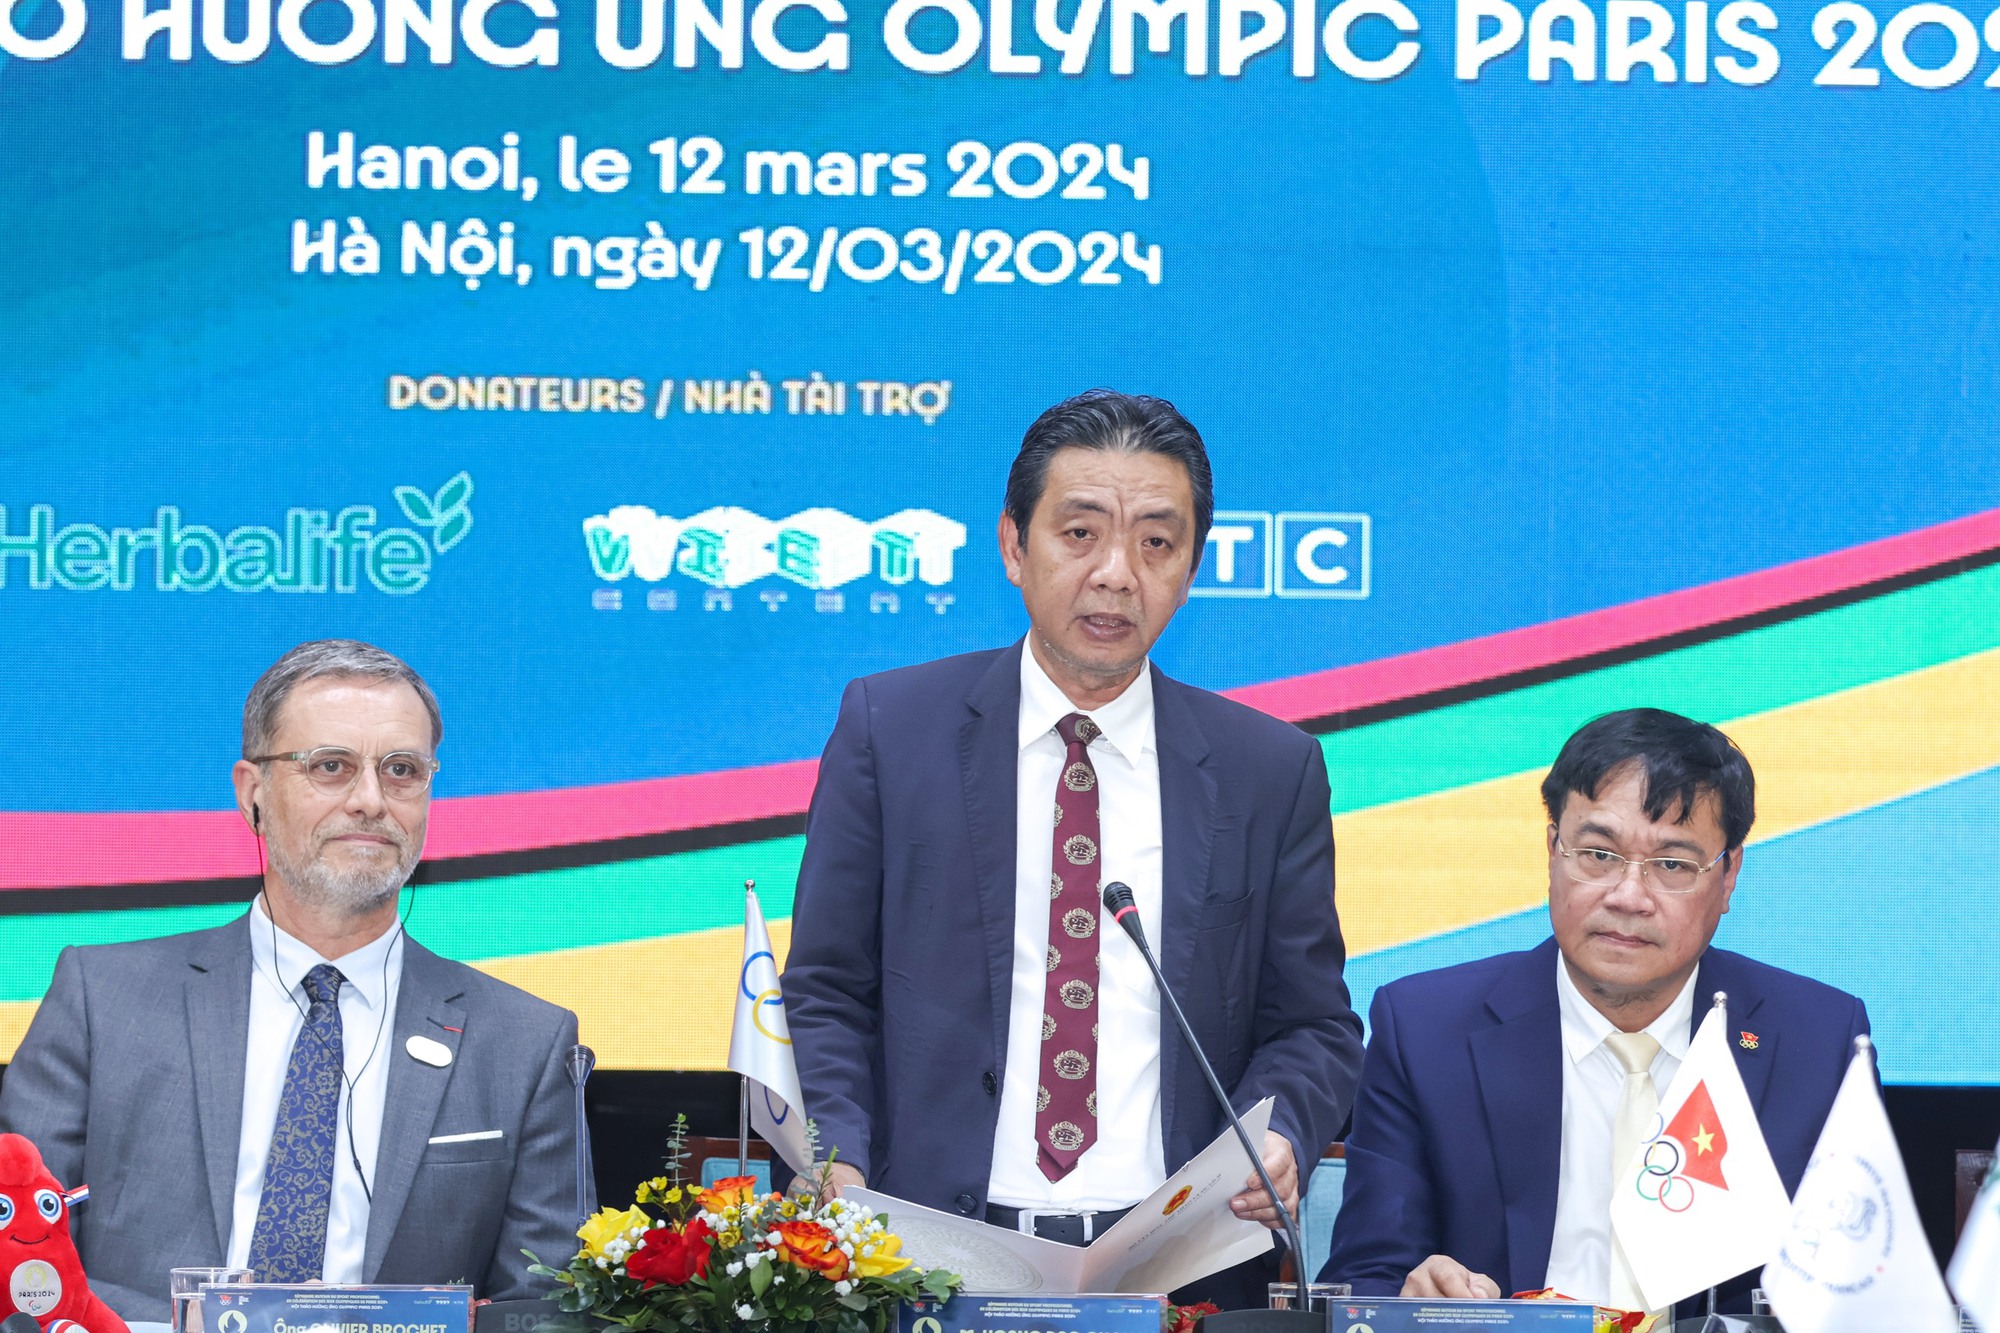 Thứ trưởng Hoàng Đạo Cương: Hội thảo hưởng ứng Olympic Paris 2024 là cầu nối góp phần nâng cấp mối quan hệ Việt Nam - Pháp - Ảnh 1.